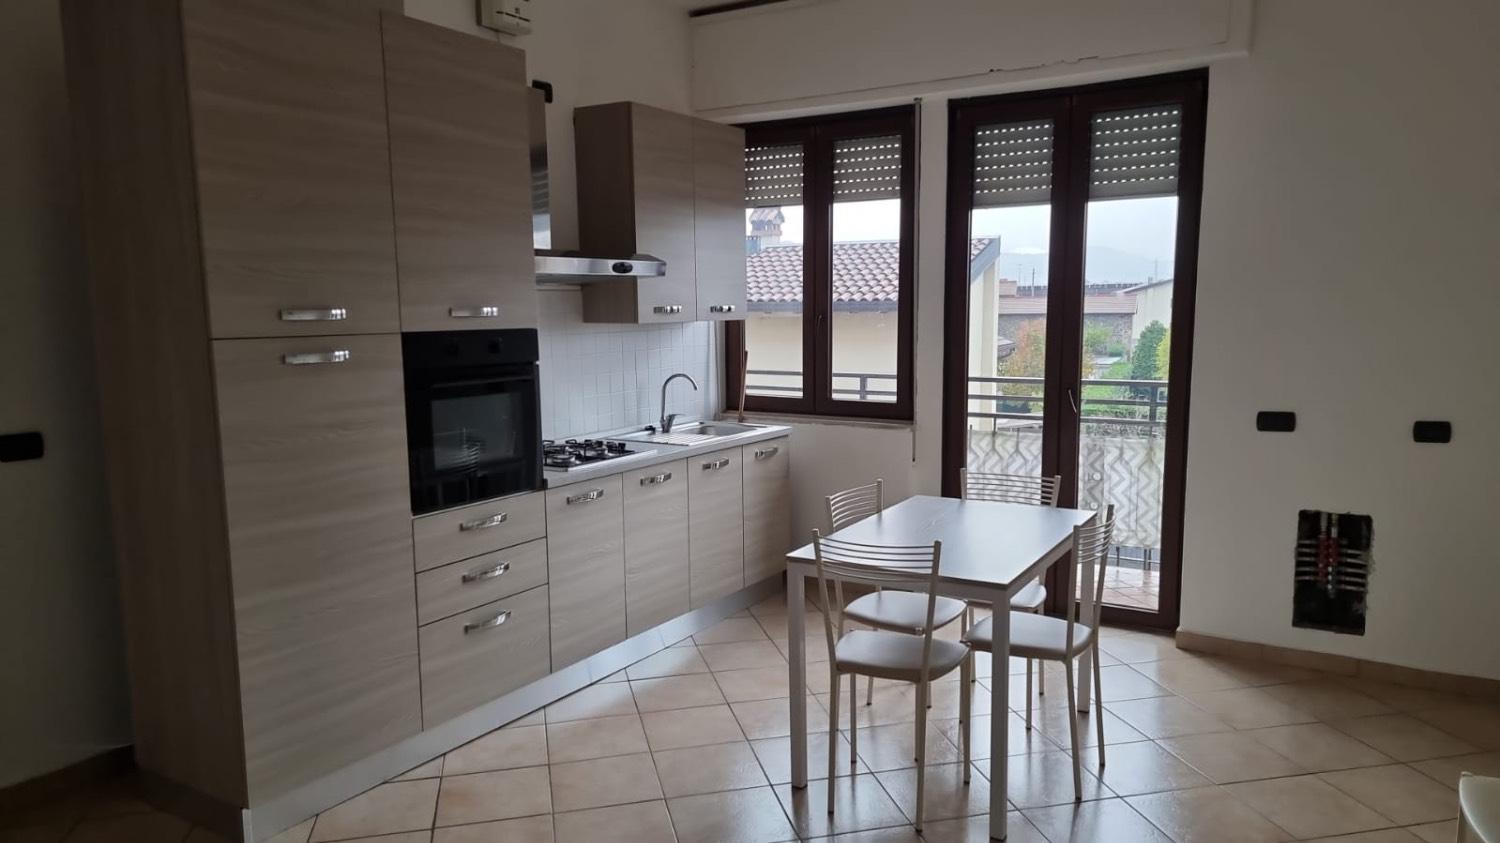 Appartamento in vendita a Madone, 3 locali, prezzo € 85.000 | CambioCasa.it